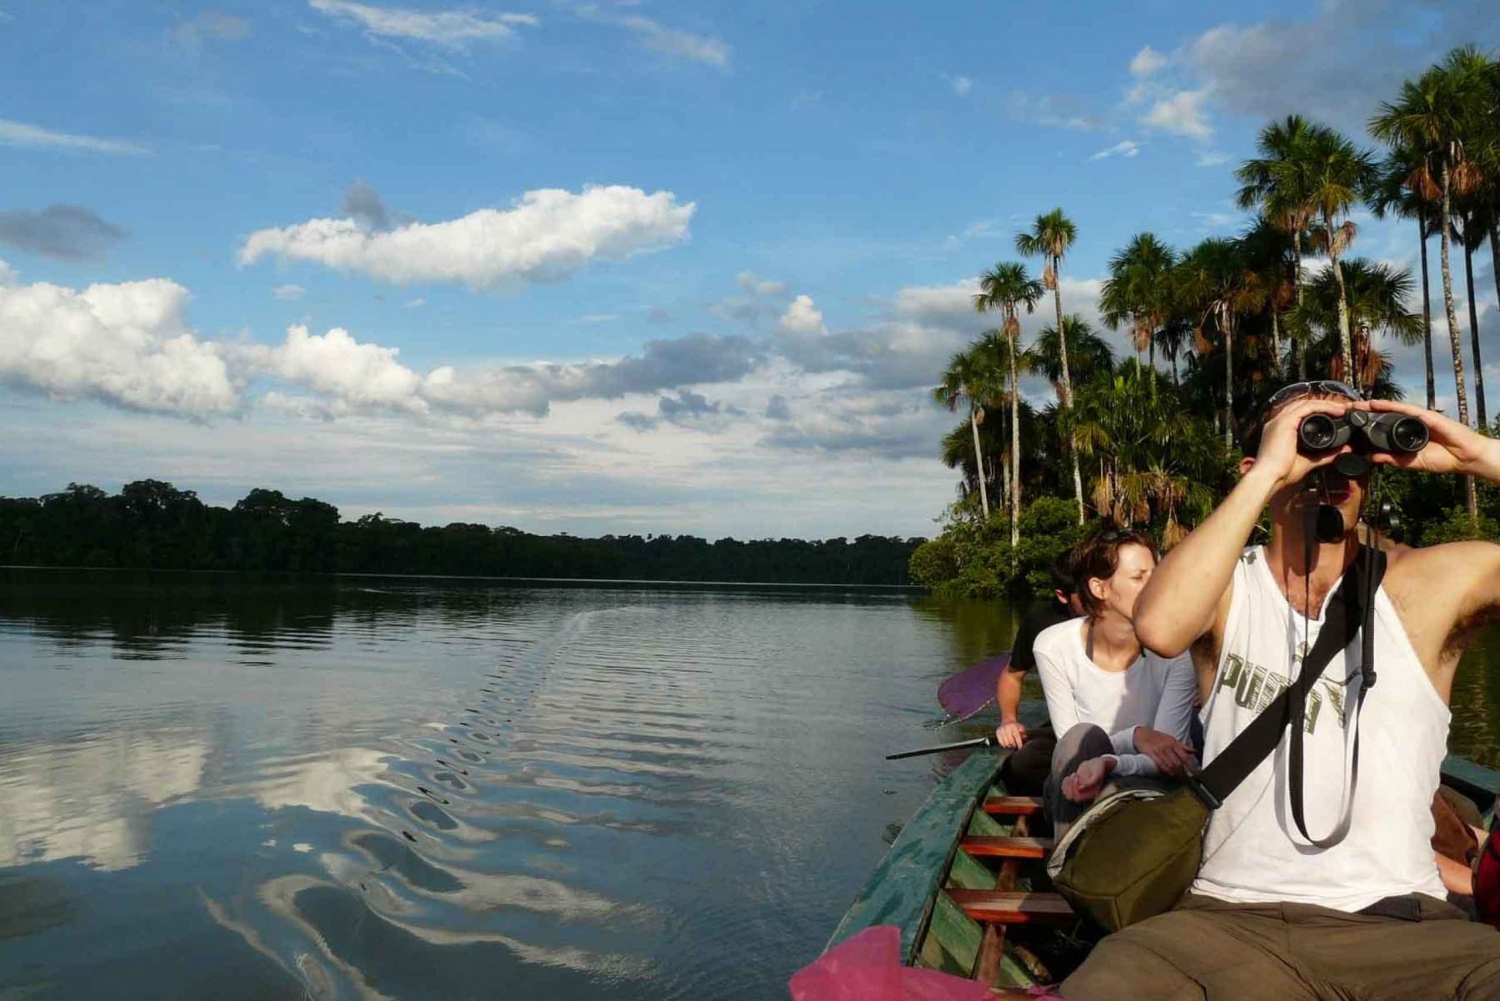 Excursión en canoa por el lago Sandoval-Caimanes negros